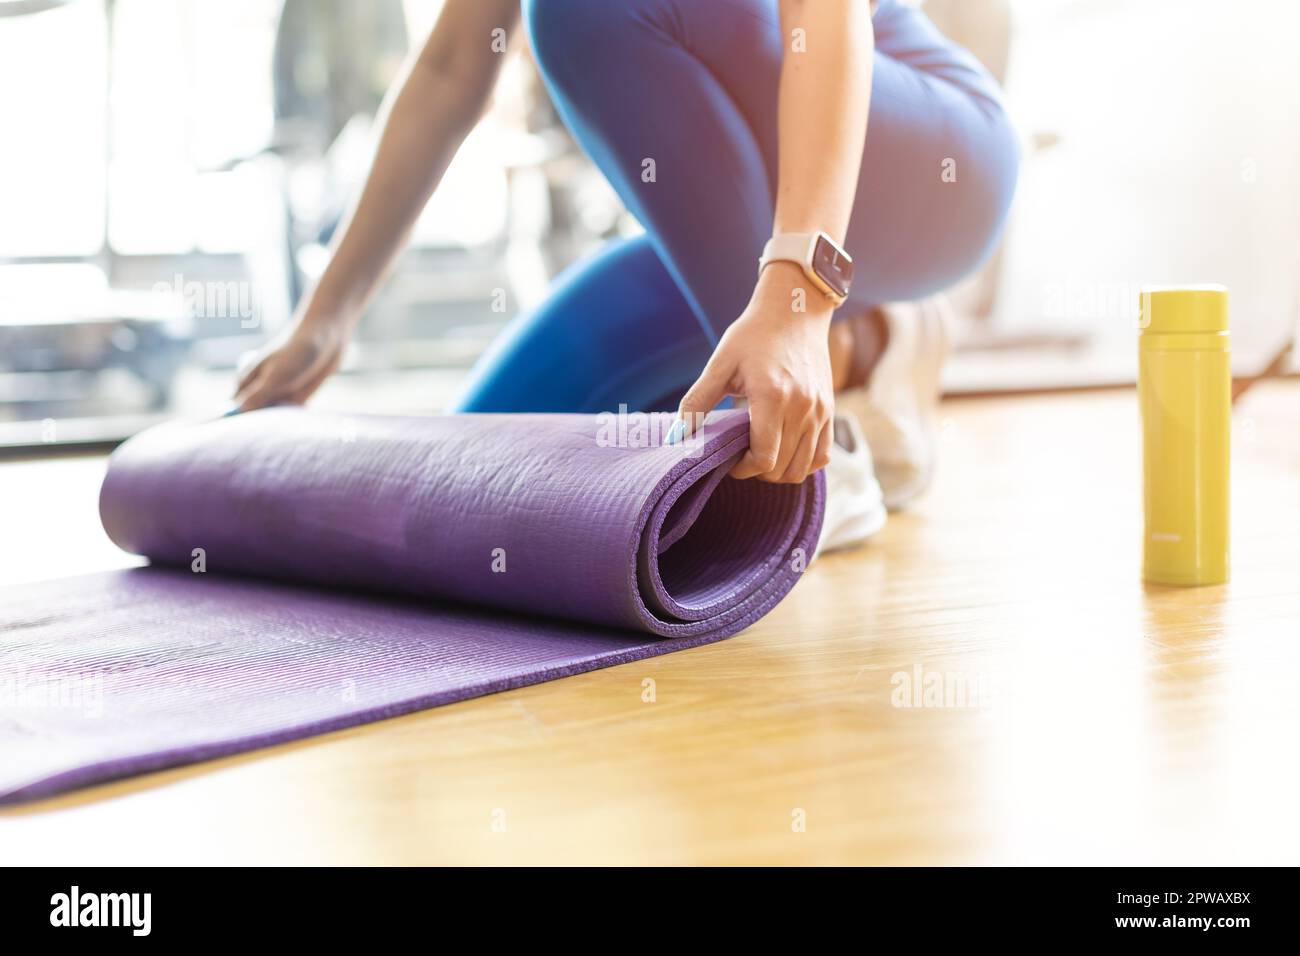 Tapis de yoga. Gros plan les mains des femmes roulent le tapis de yoga d'exercice en caoutchouc TPE sur le sol du club de sport. Banque D'Images